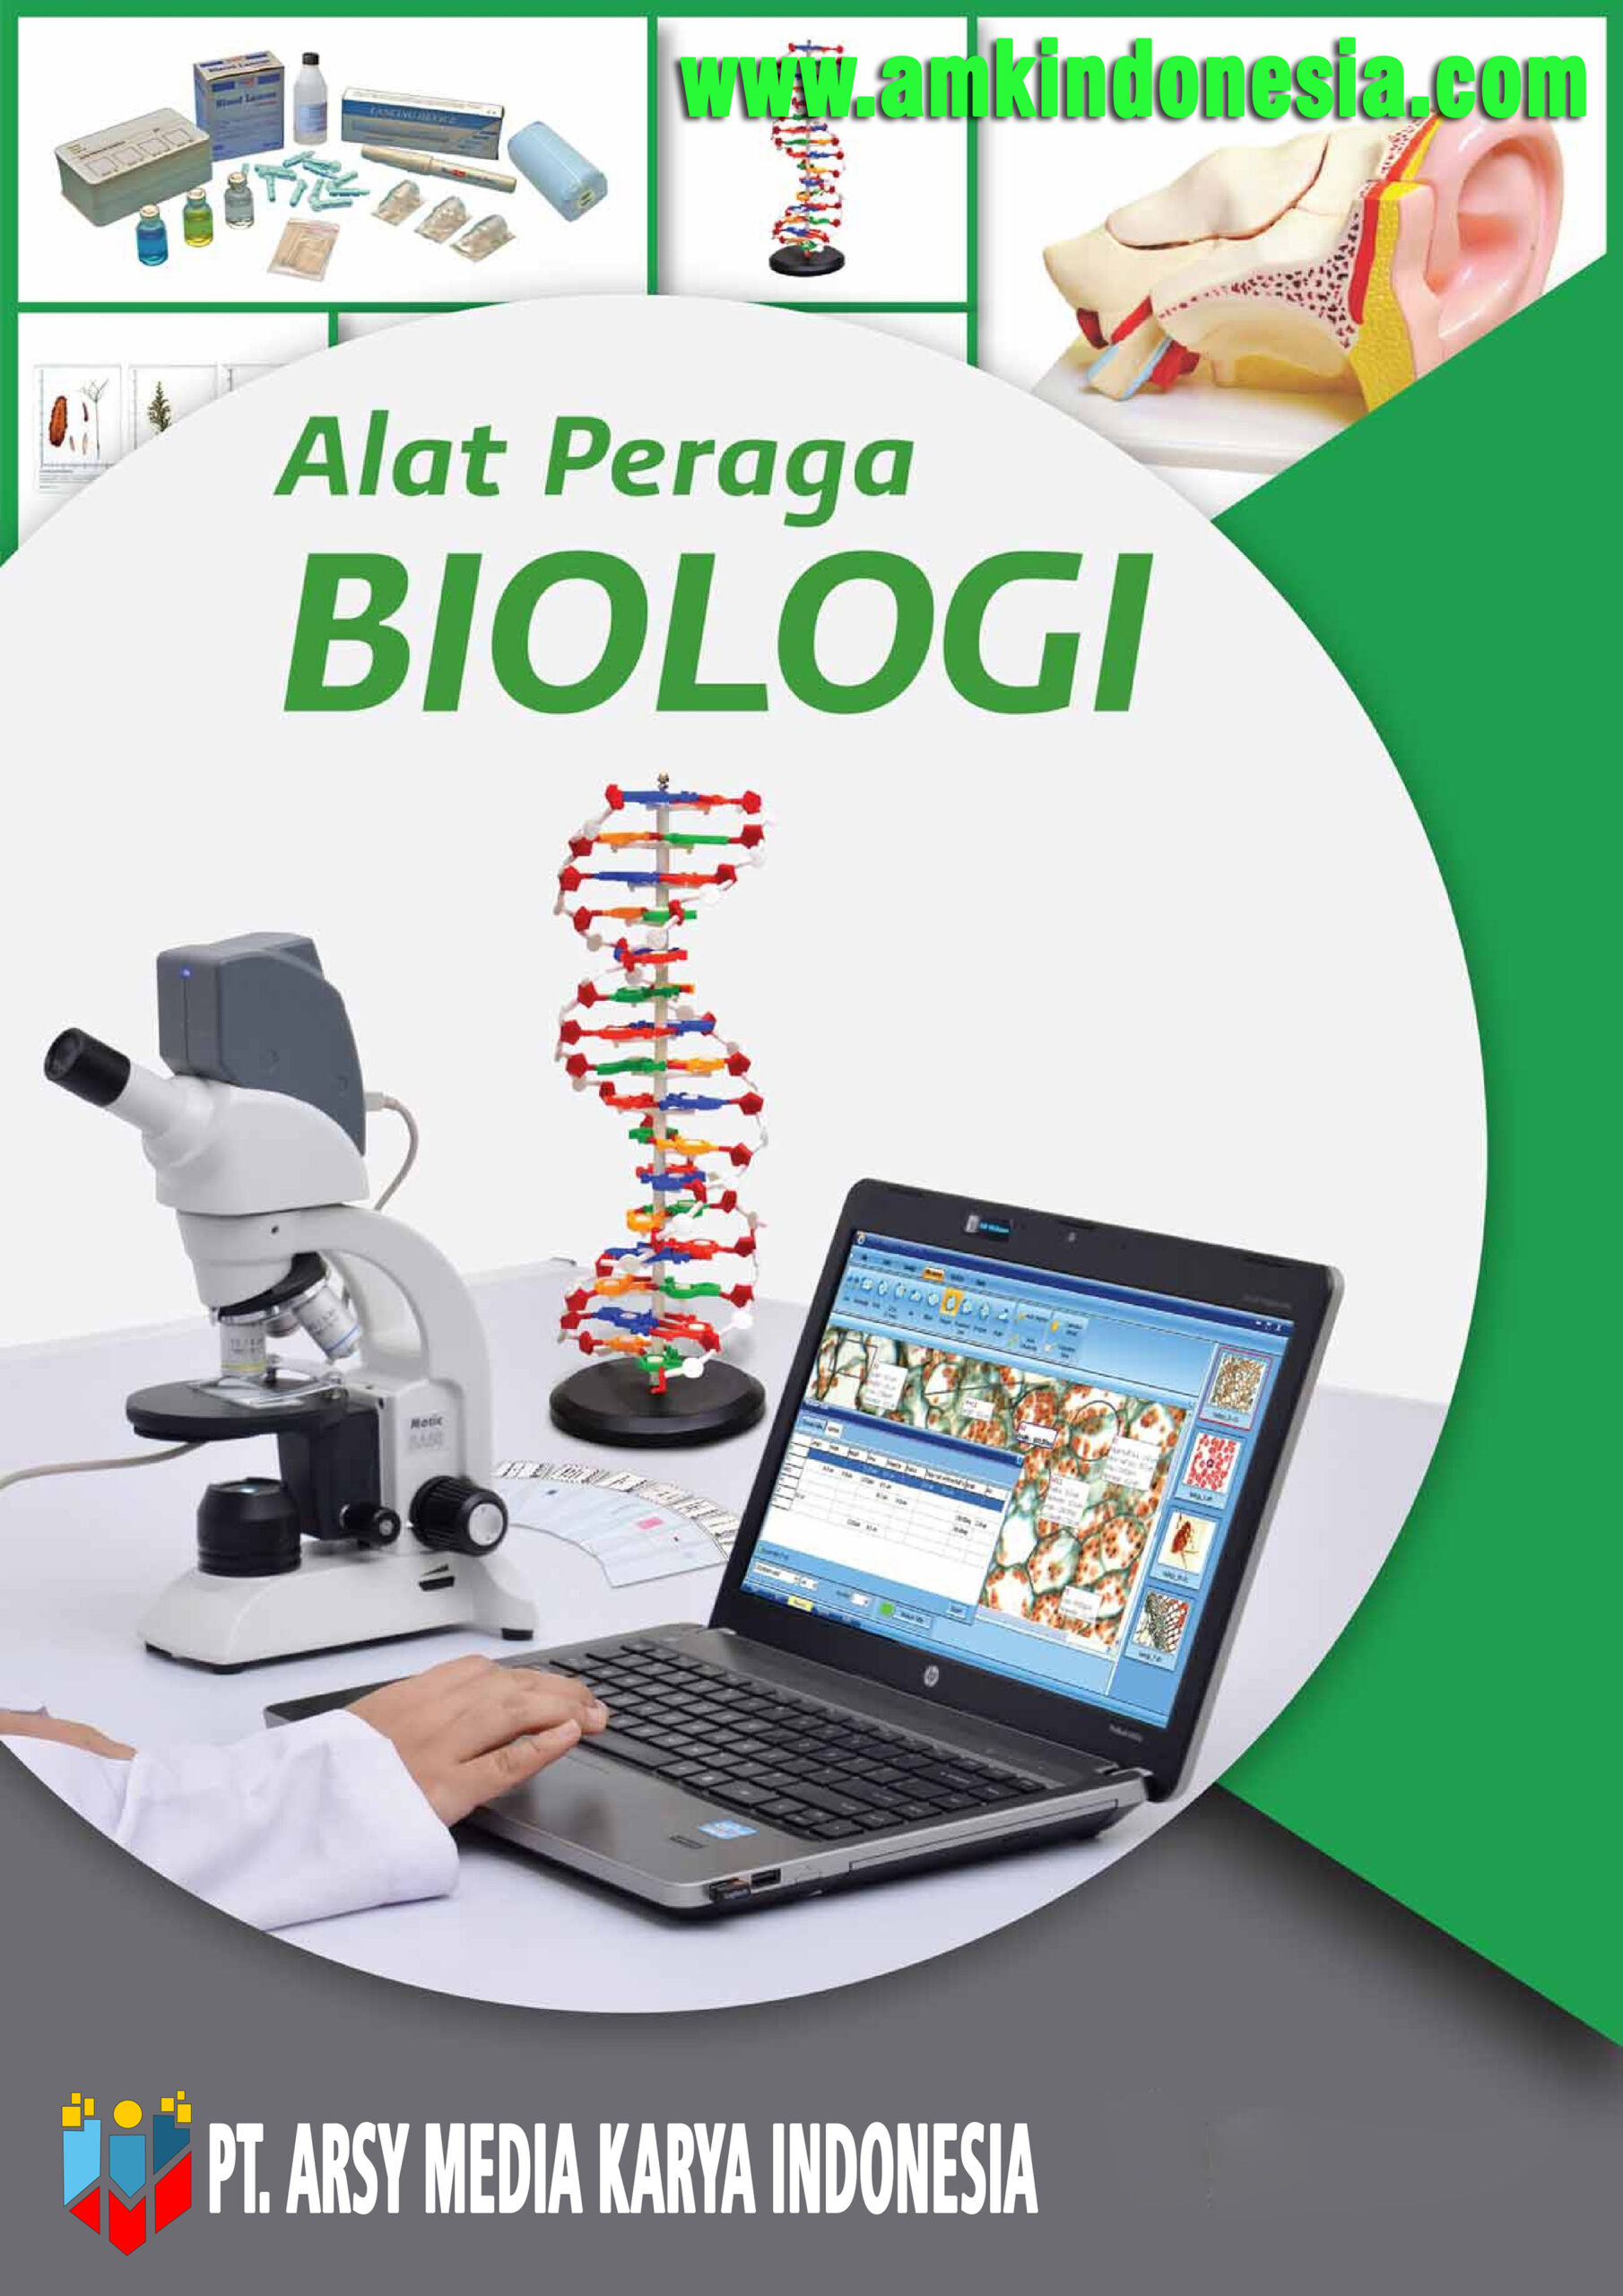 Katalog Biologi pt. arsy media karya indonesia amkindonesia.com